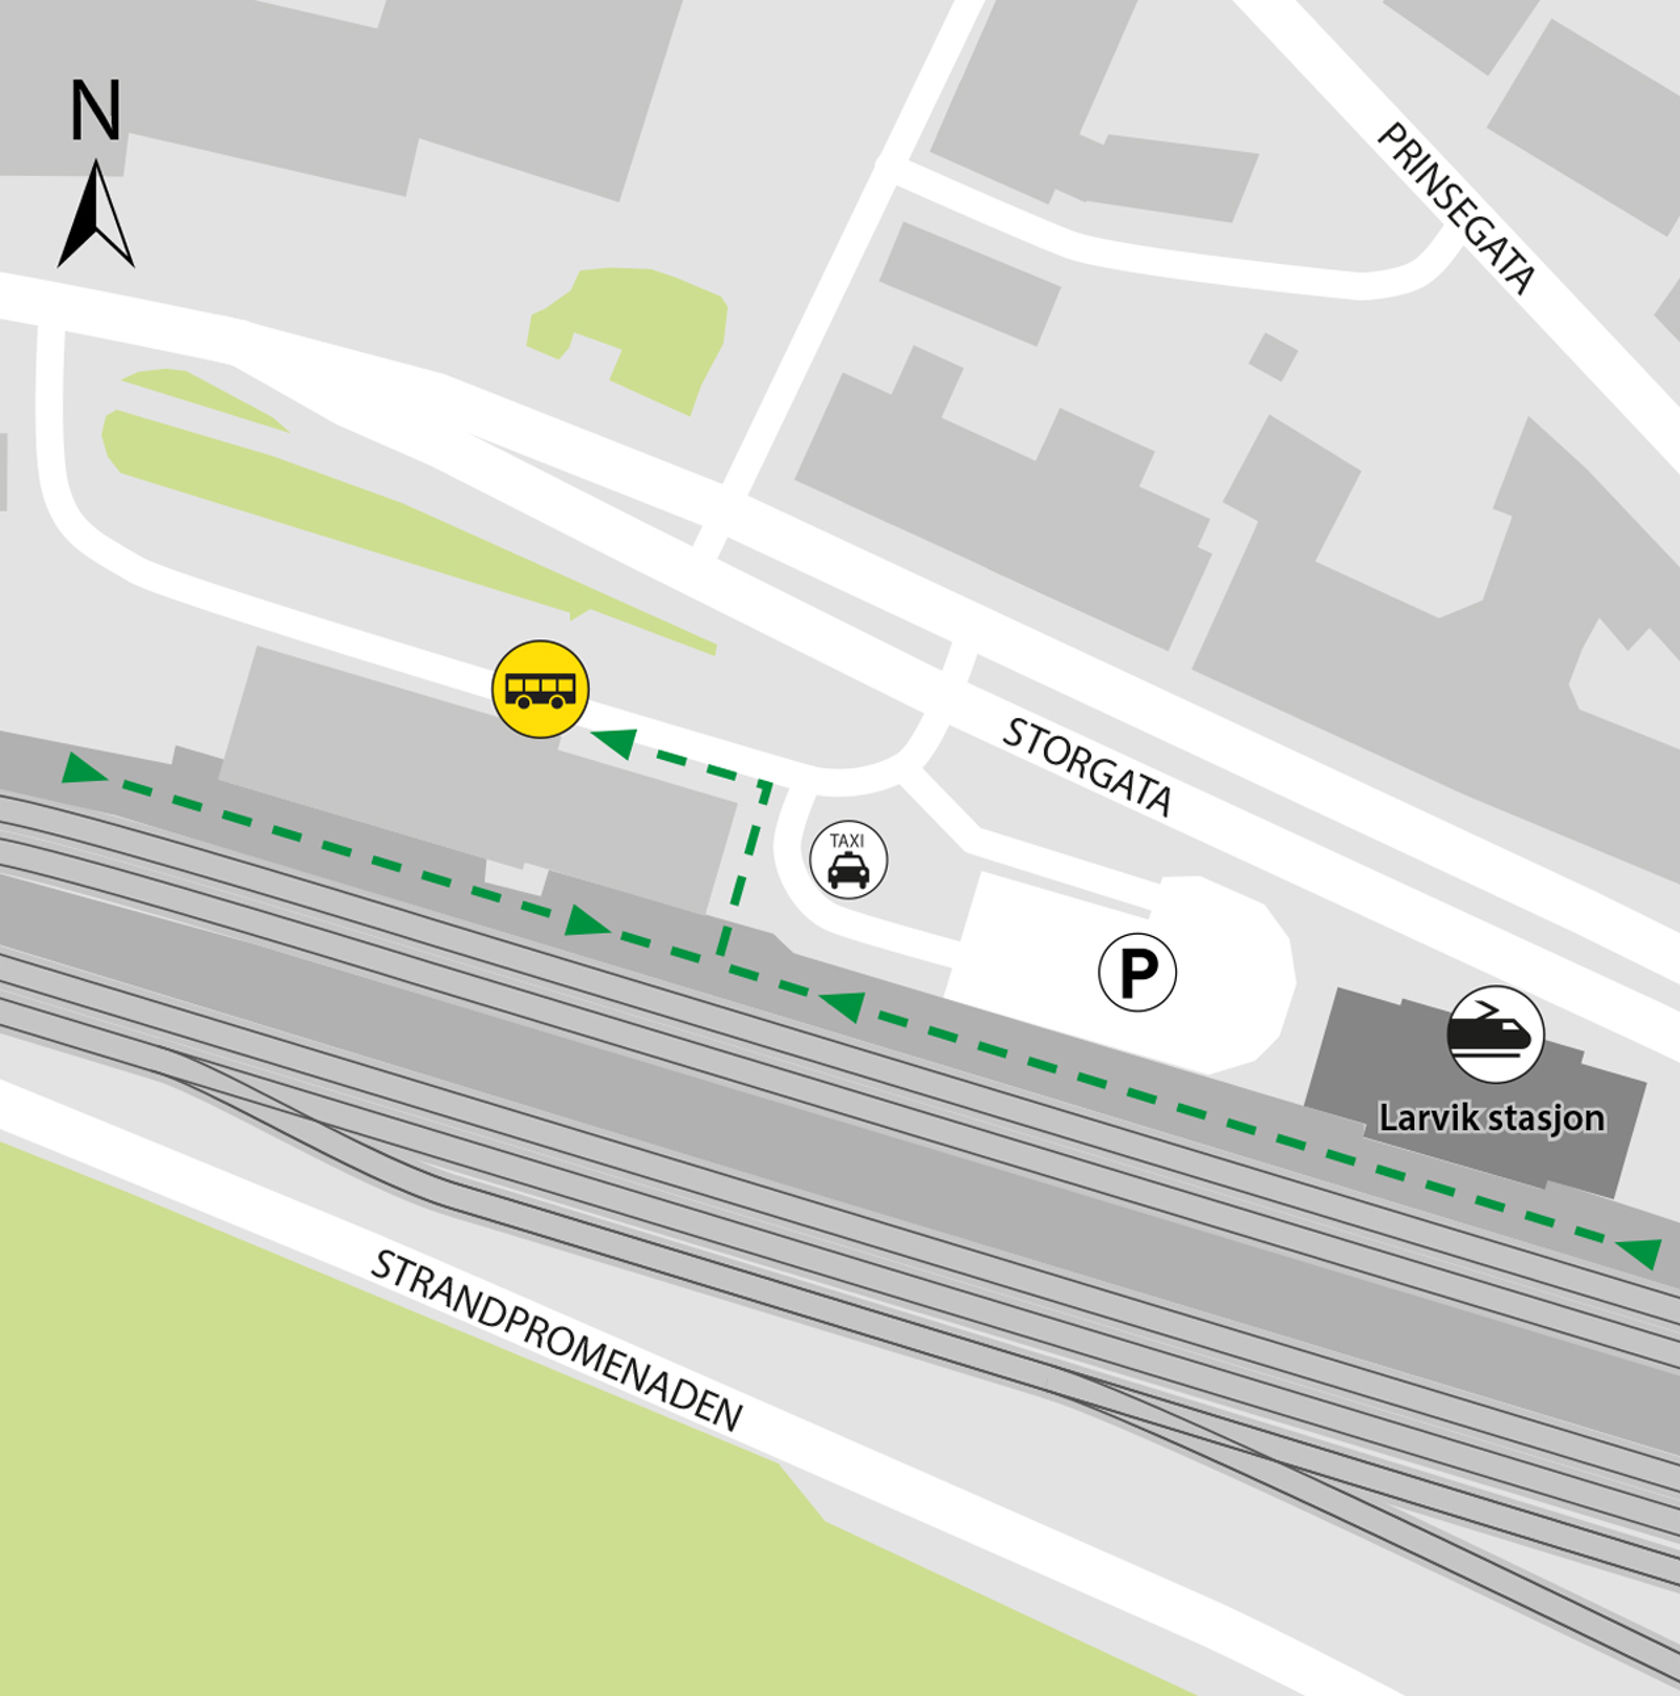 Kartet viser at bussene kjører fra bussholdeplassen Larvik stasjon.